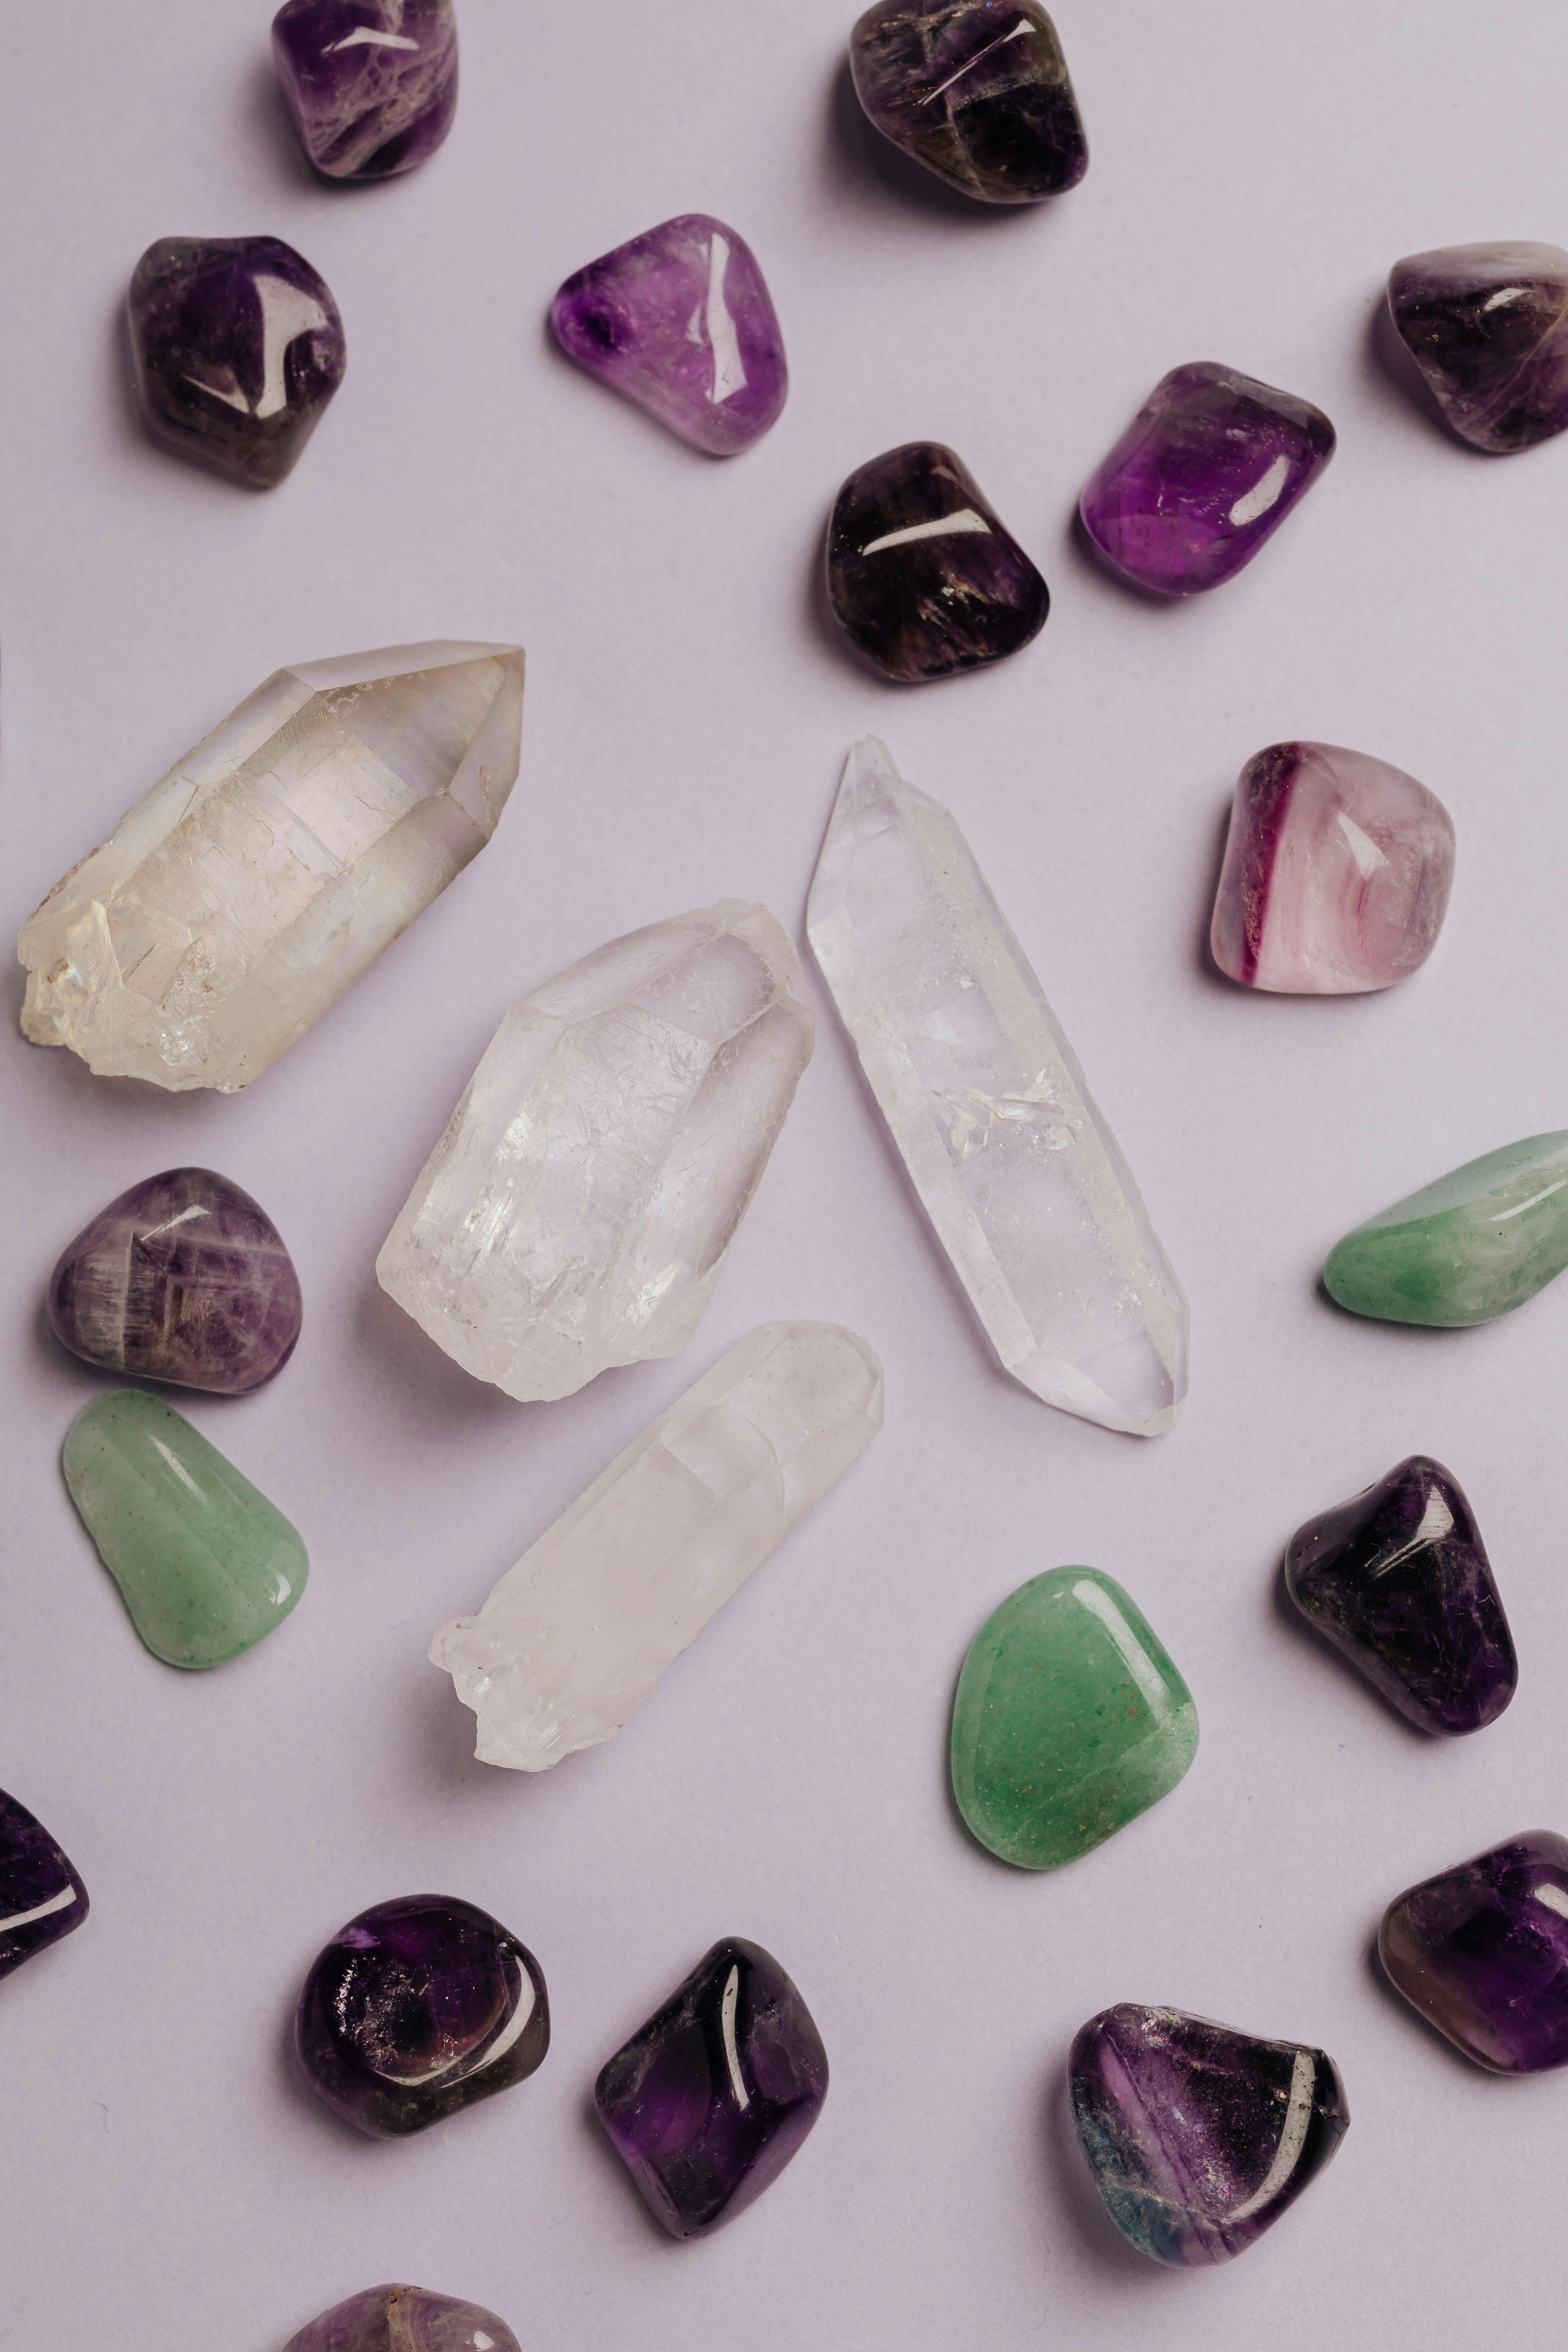 Cristales variados | Fuente: Pexels